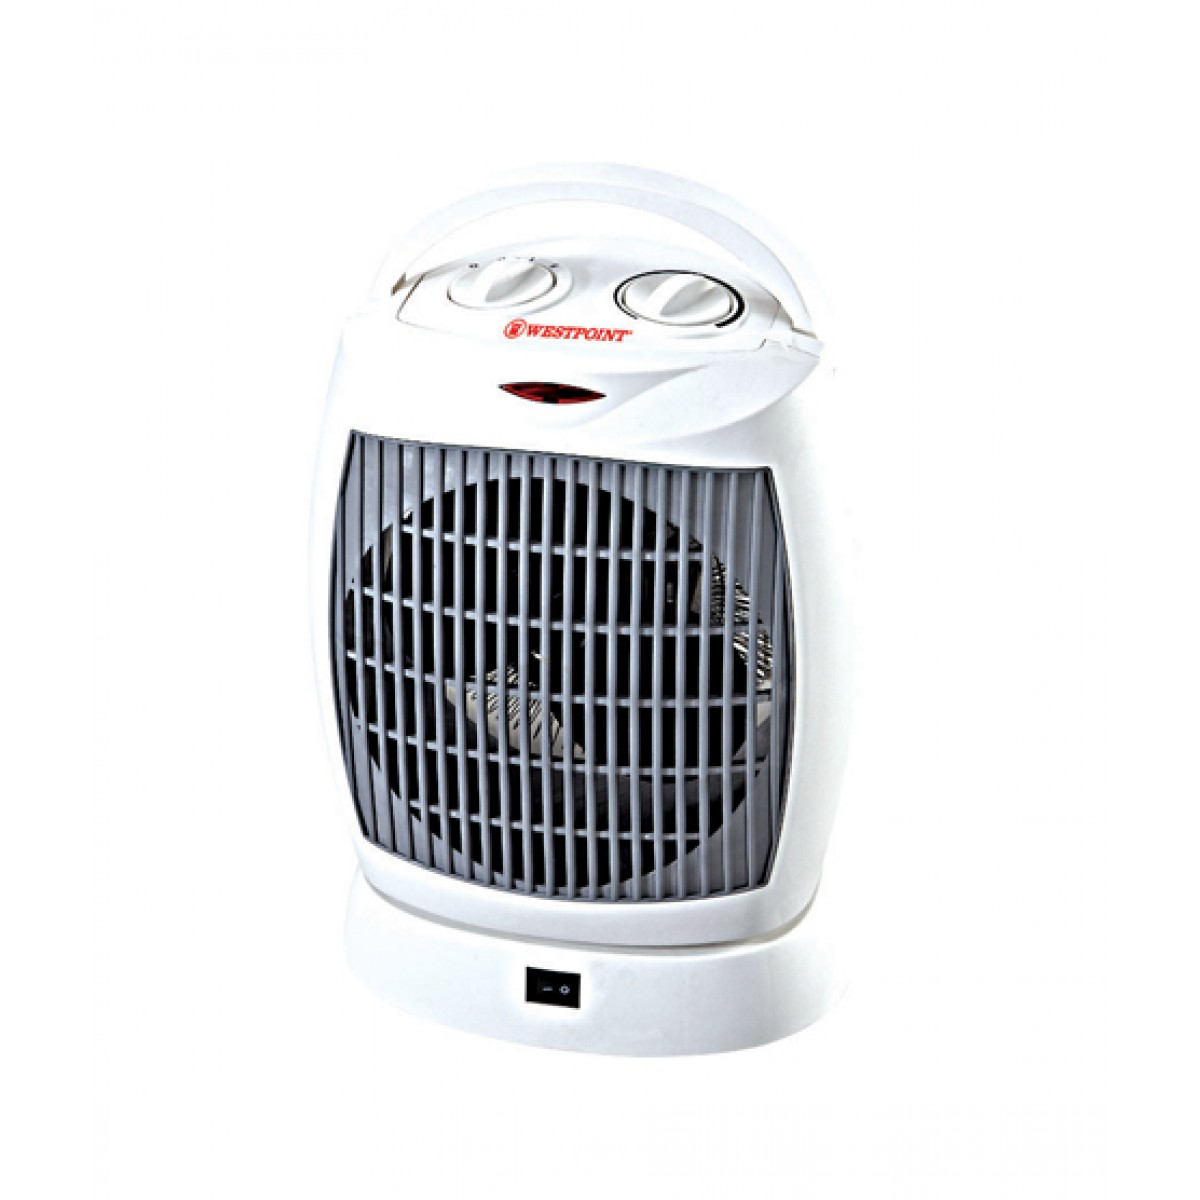 Westpoint Wf 5145 Fan Heater regarding dimensions 1200 X 1200